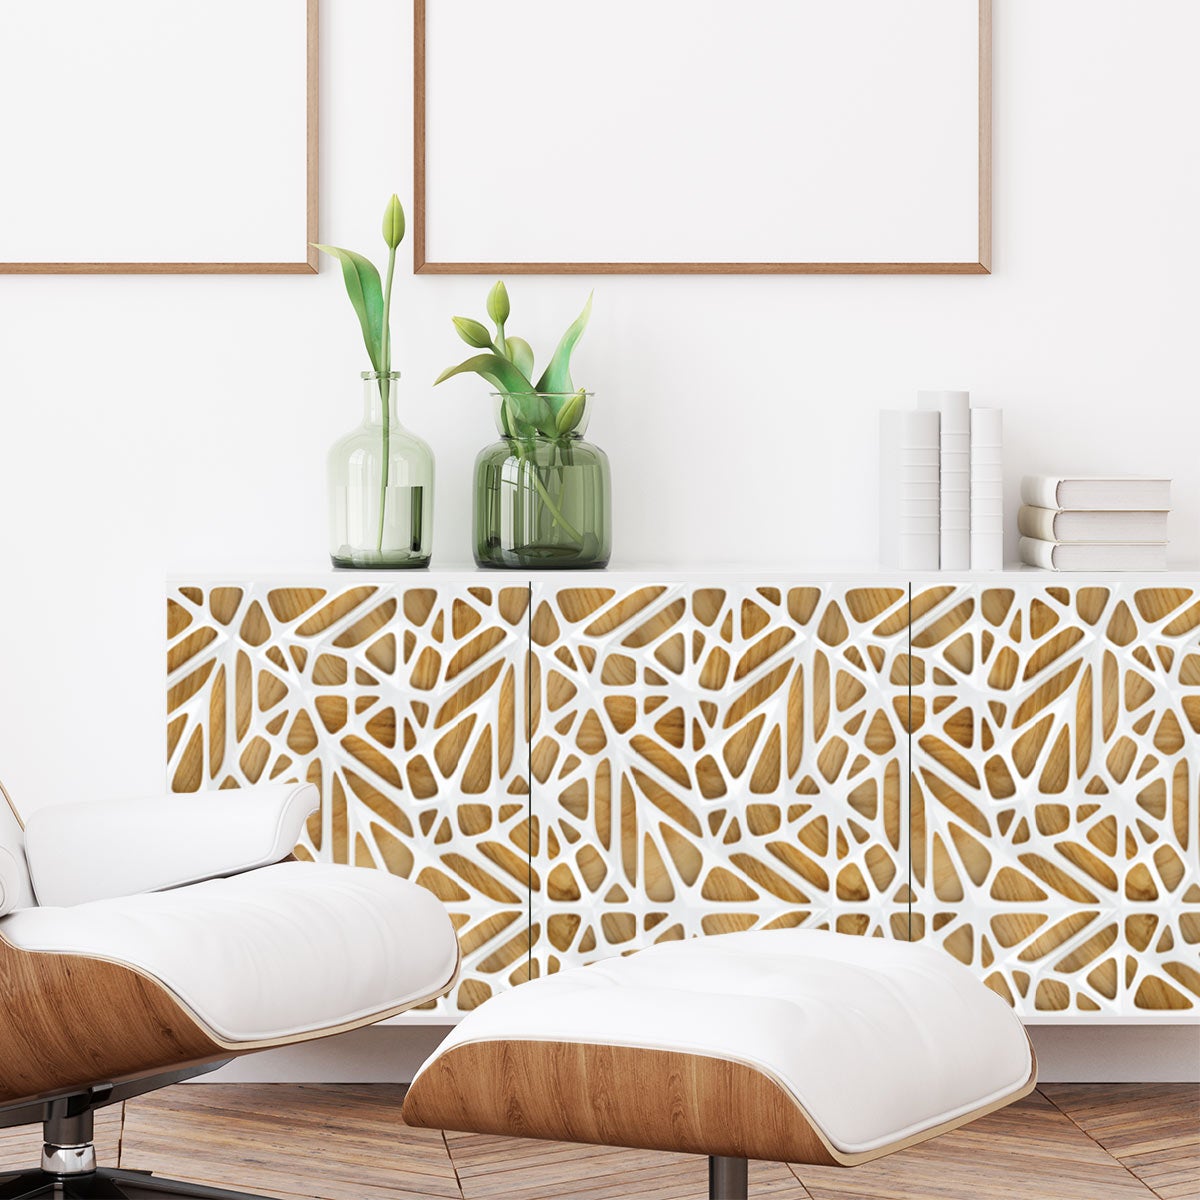 Vinilo muebles escandinavos madera de diseño blanco - adhesivo de pared -  revestimiento sticker mural decorativo - 60x90cm